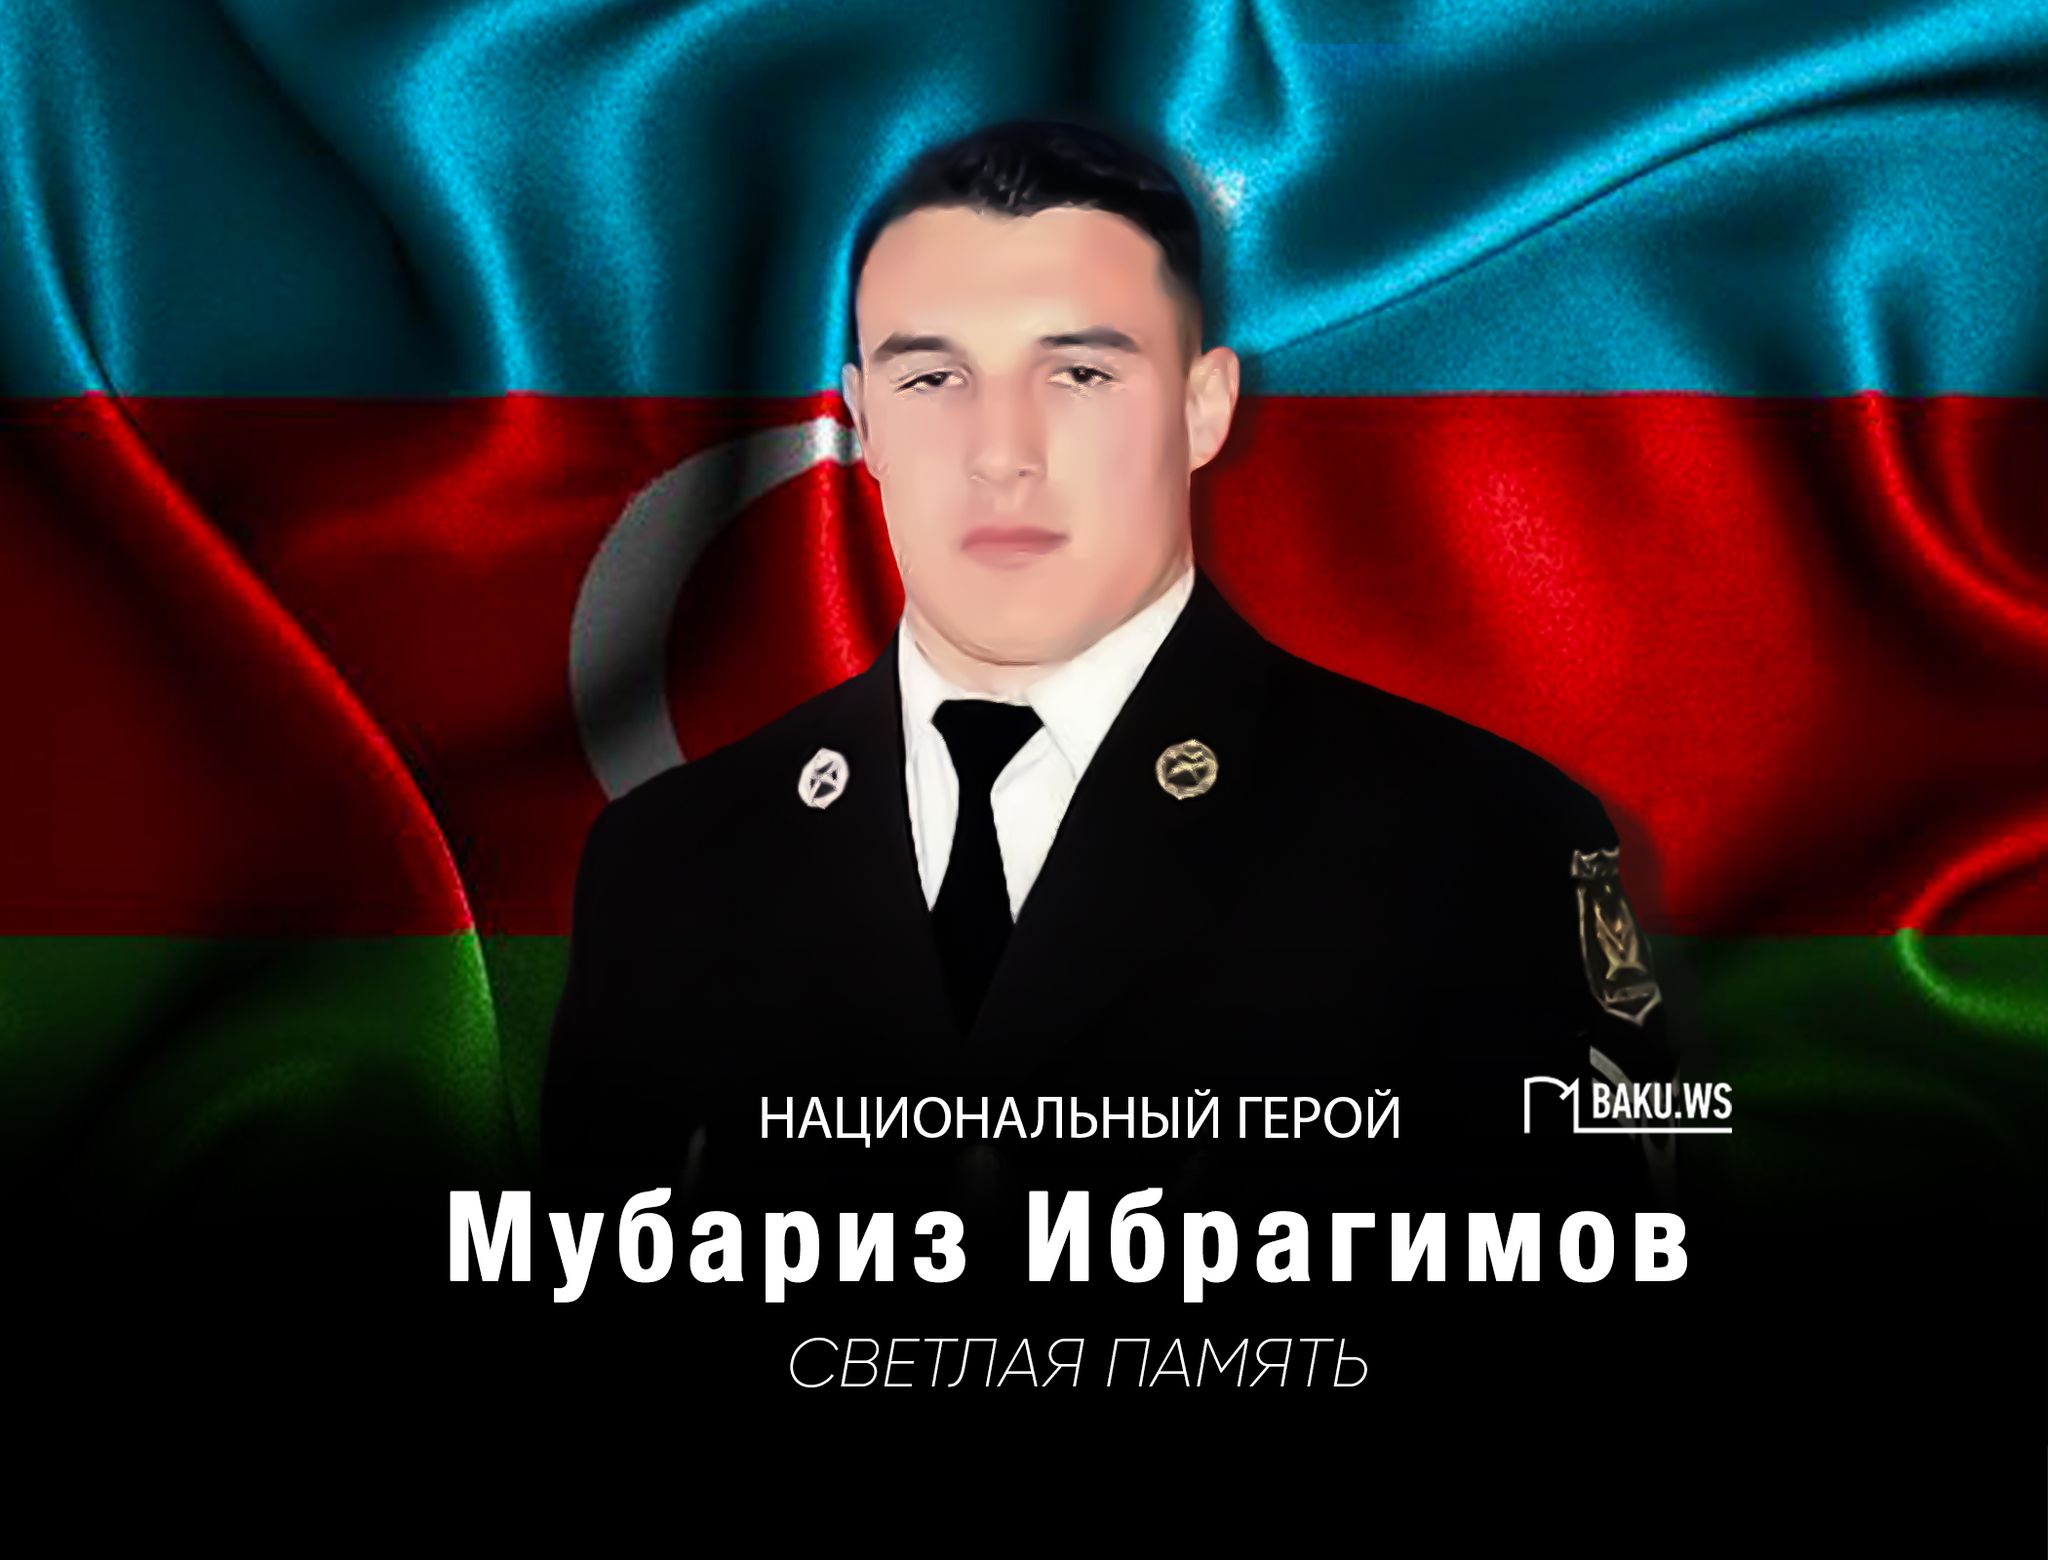 Сегодня день памяти Национального героя Азербайджана Мубариза Ибрагимова